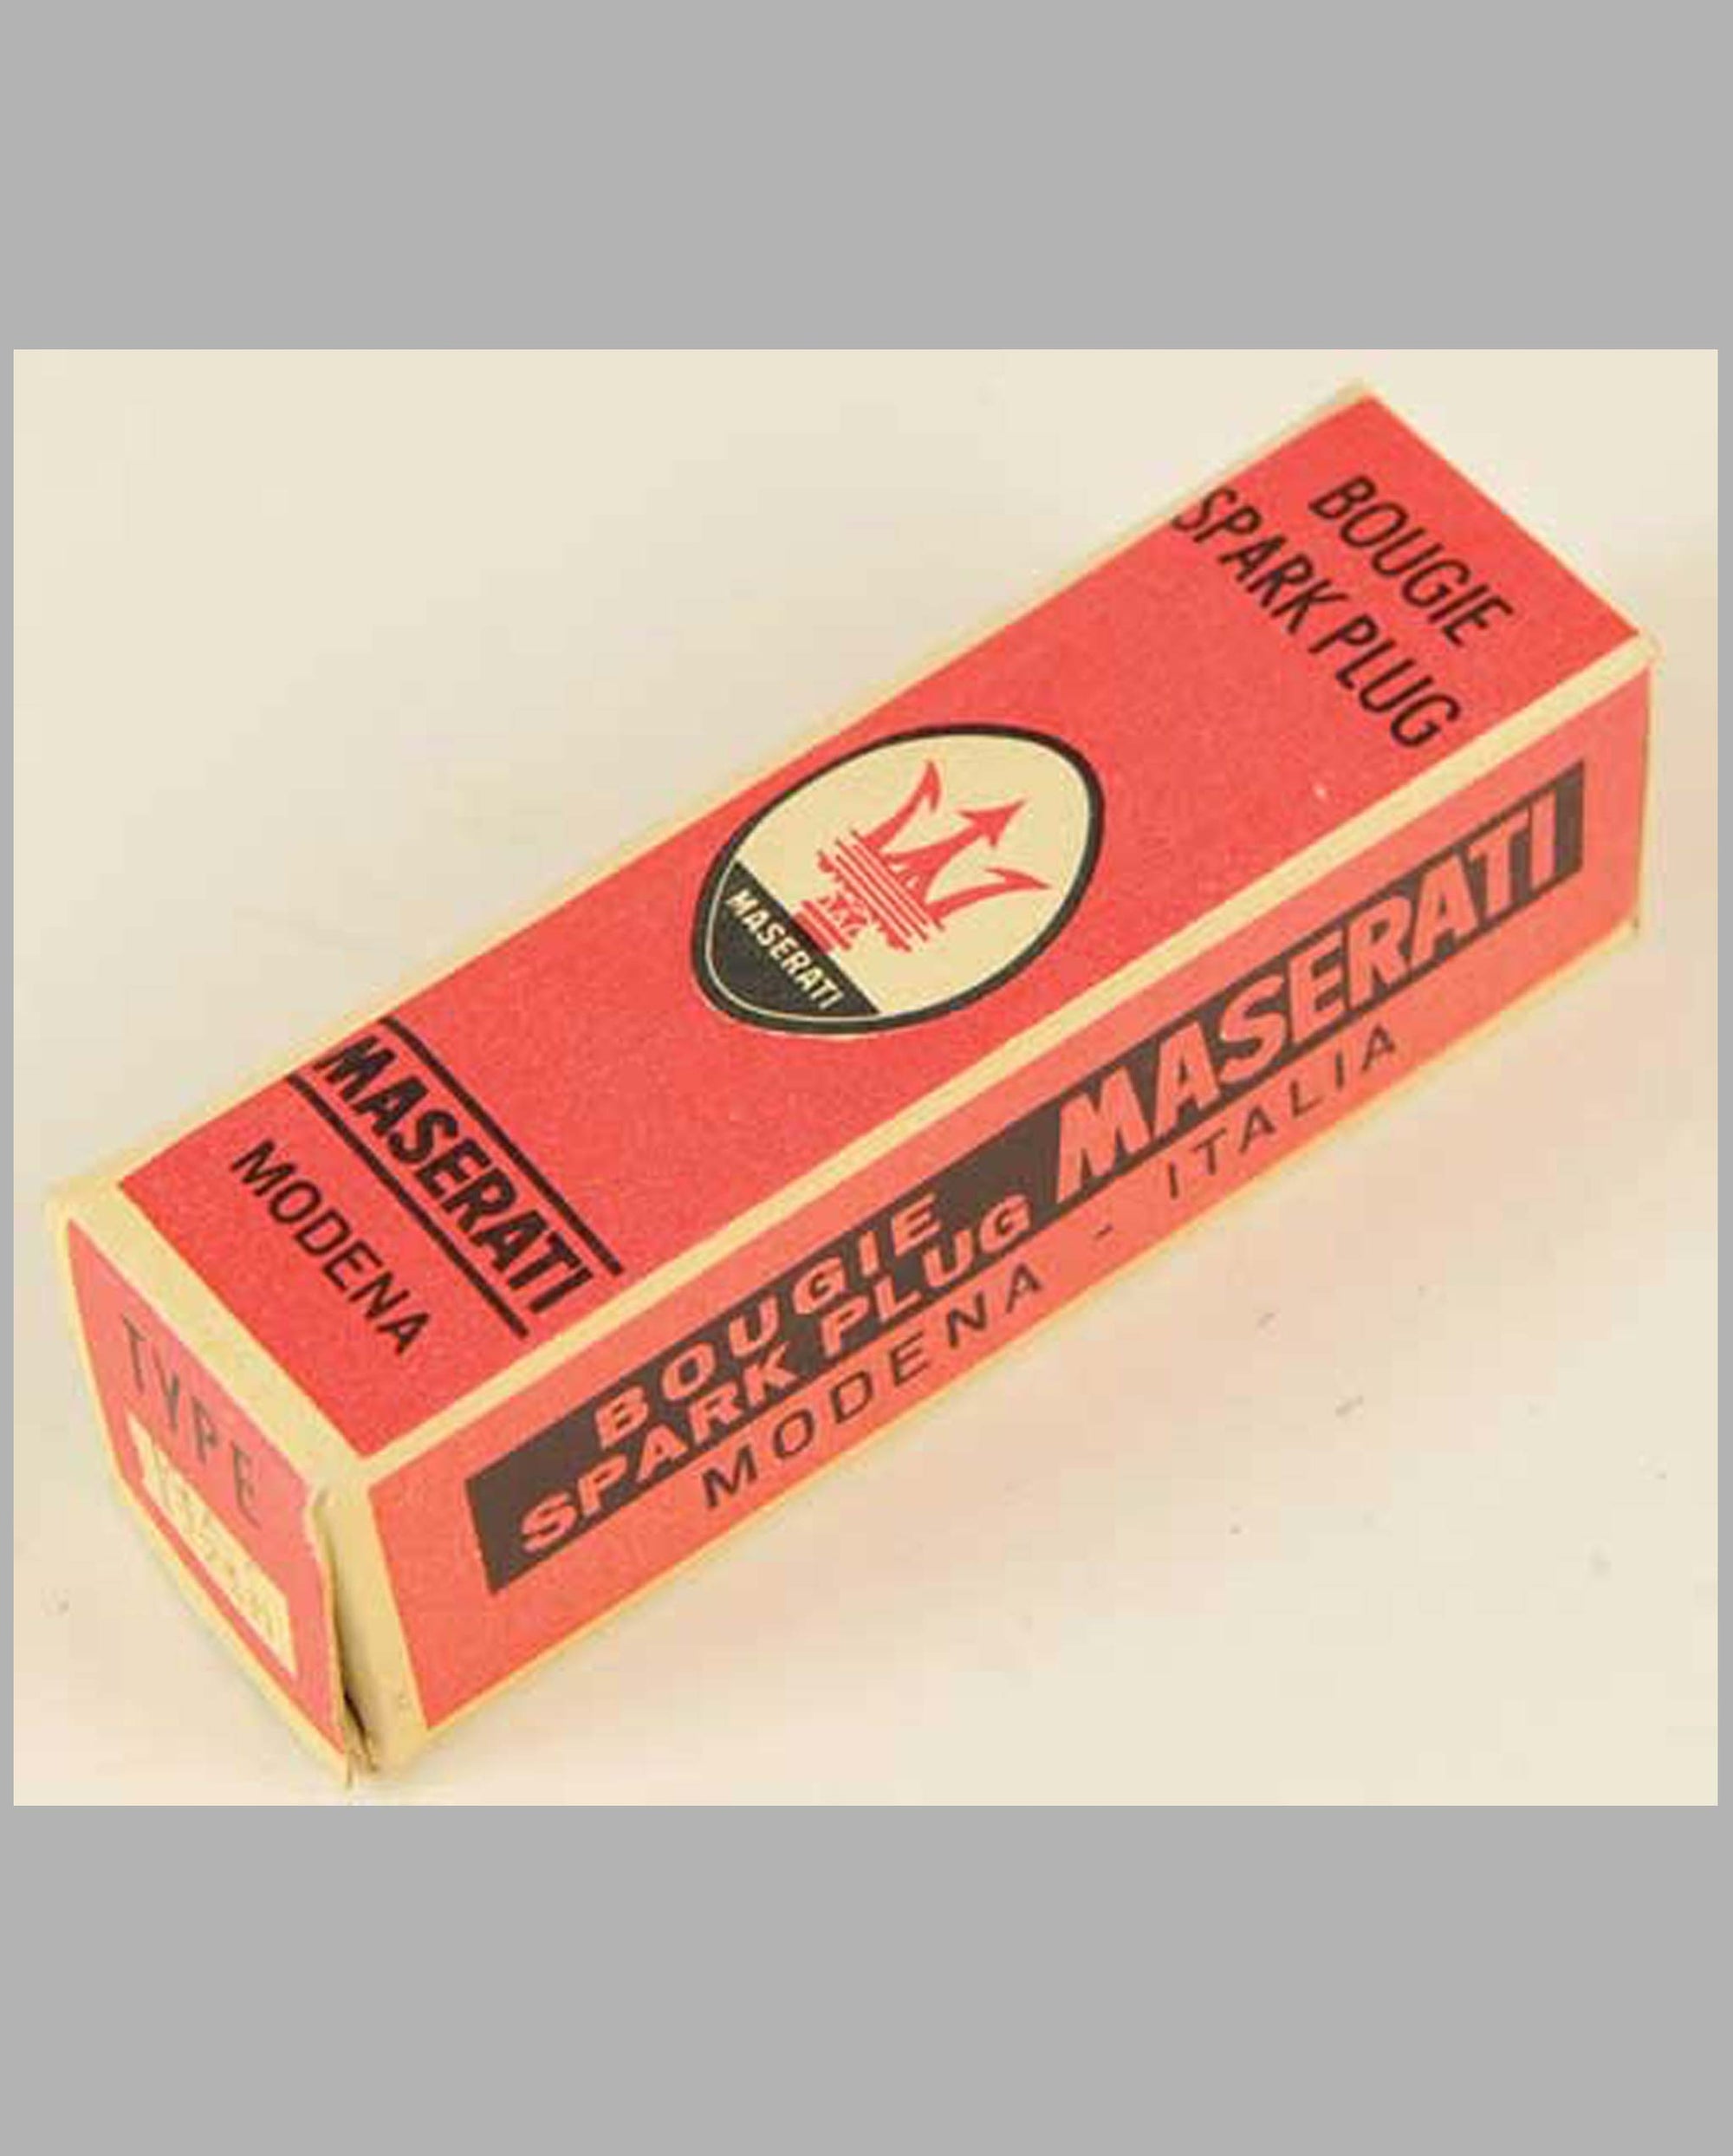 Maserati Spark Plug in original box, type FL225M